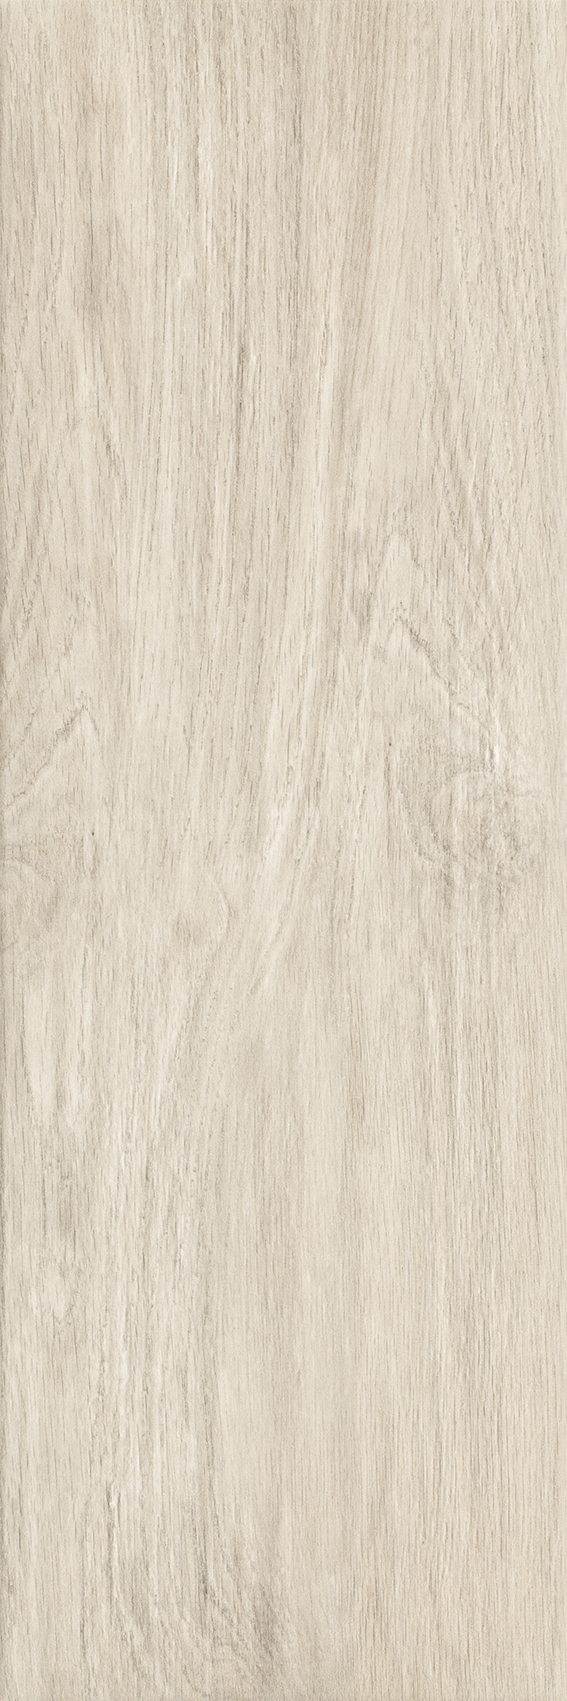 Dlažba Wood Basic Bianco 20x60 cm